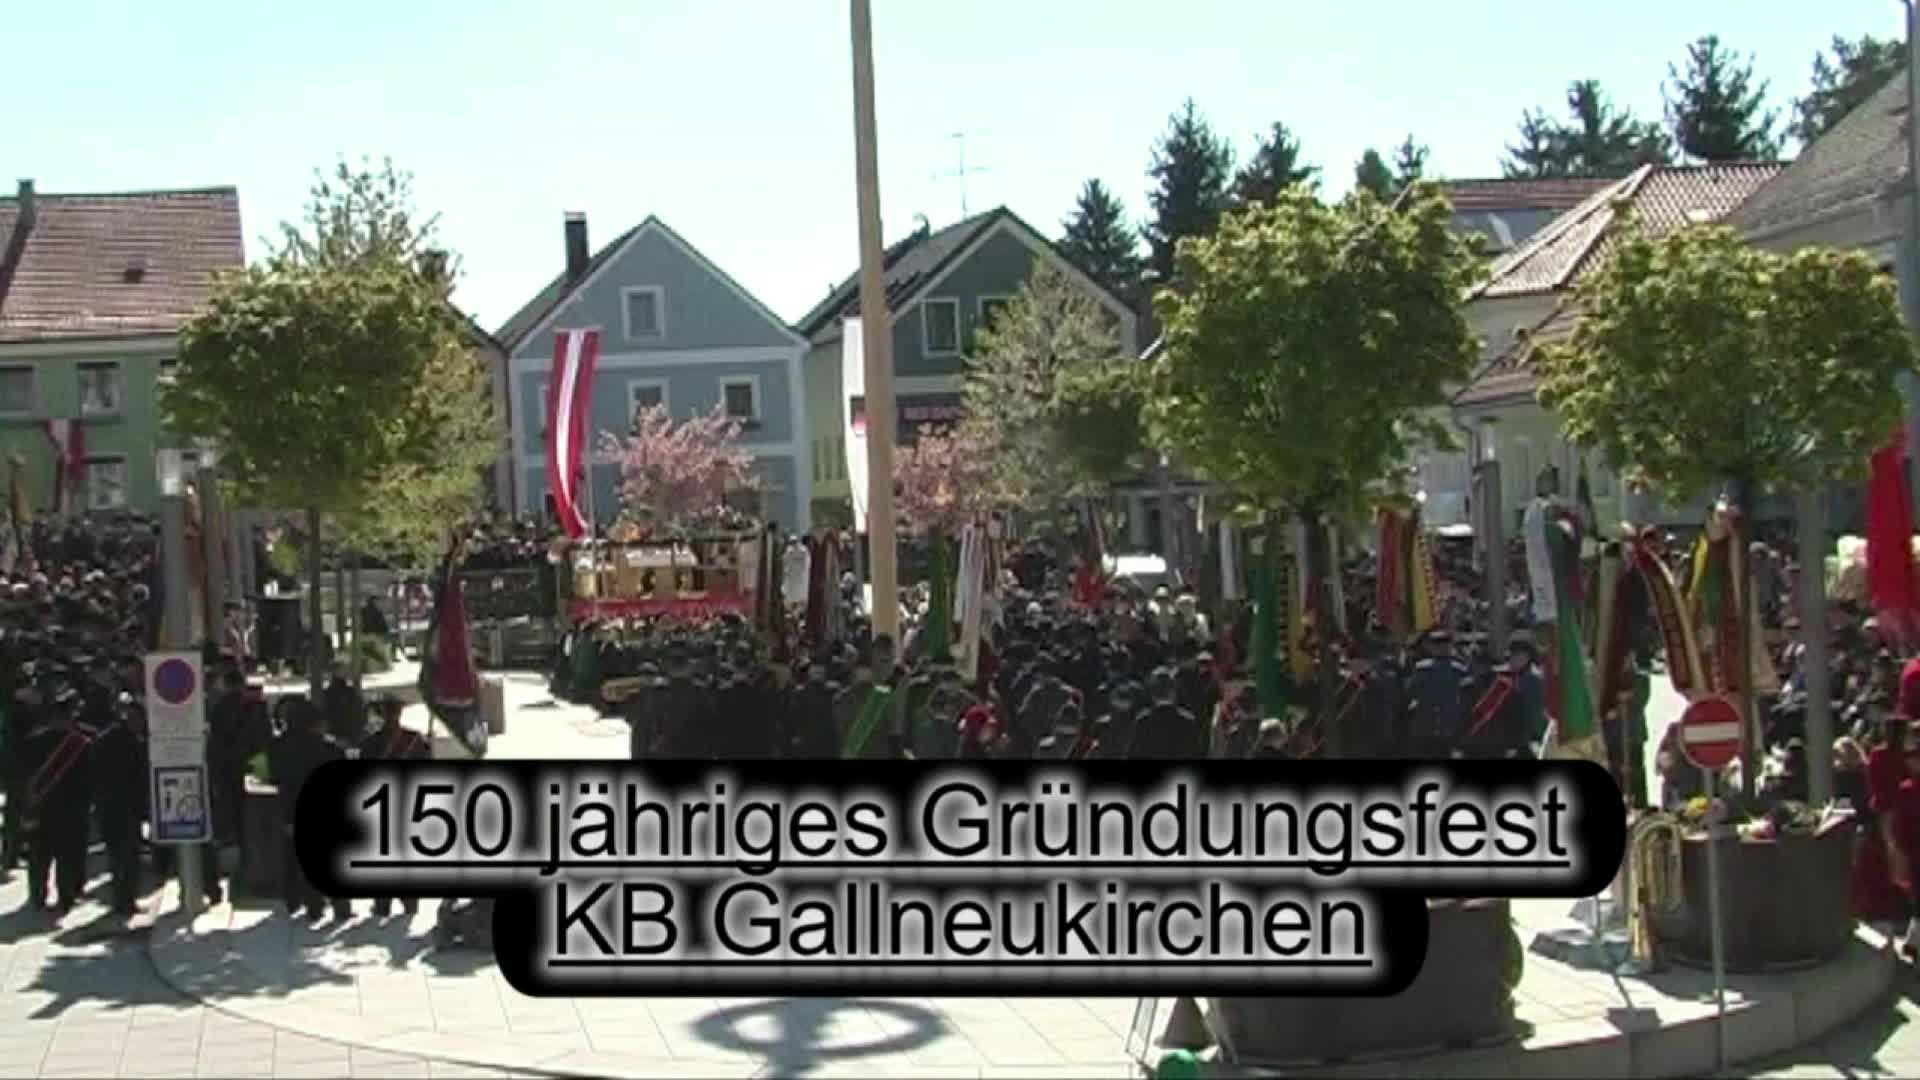 150 jähriges Gründungsfest KB Gallneukirchen